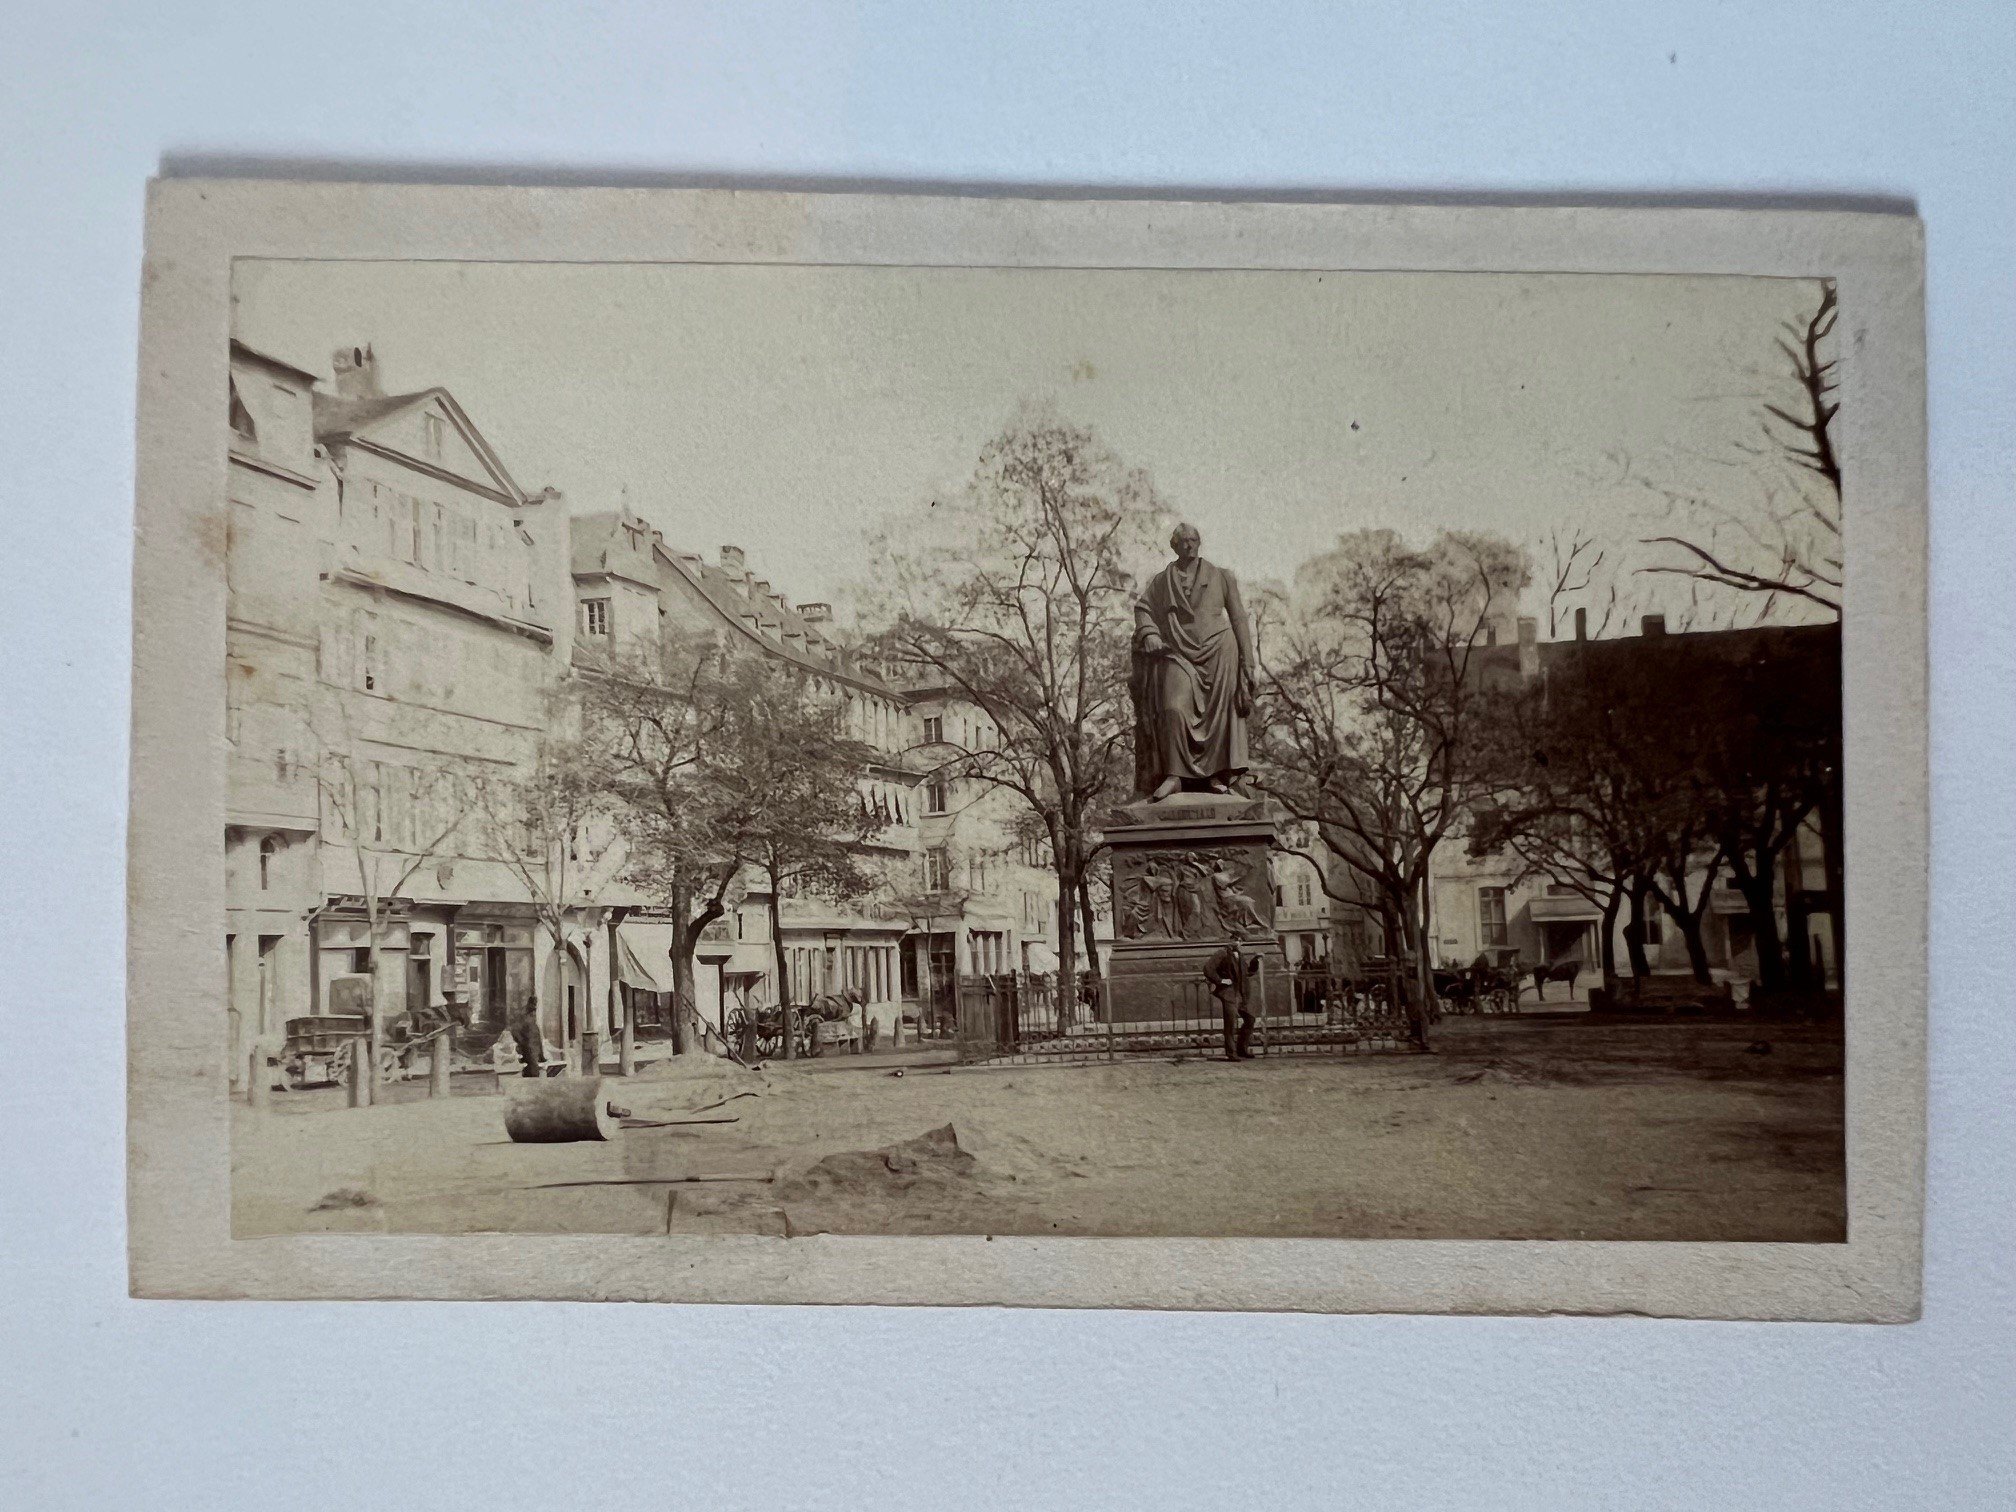 CdV, Unbekannter Fotograf, Frankfurt, Goethe-Denkmal auf dem Rossmarkt, ca. 1865. (Taunus-Rhein-Main - Regionalgeschichtliche Sammlung Dr. Stefan Naas CC BY-NC-SA)